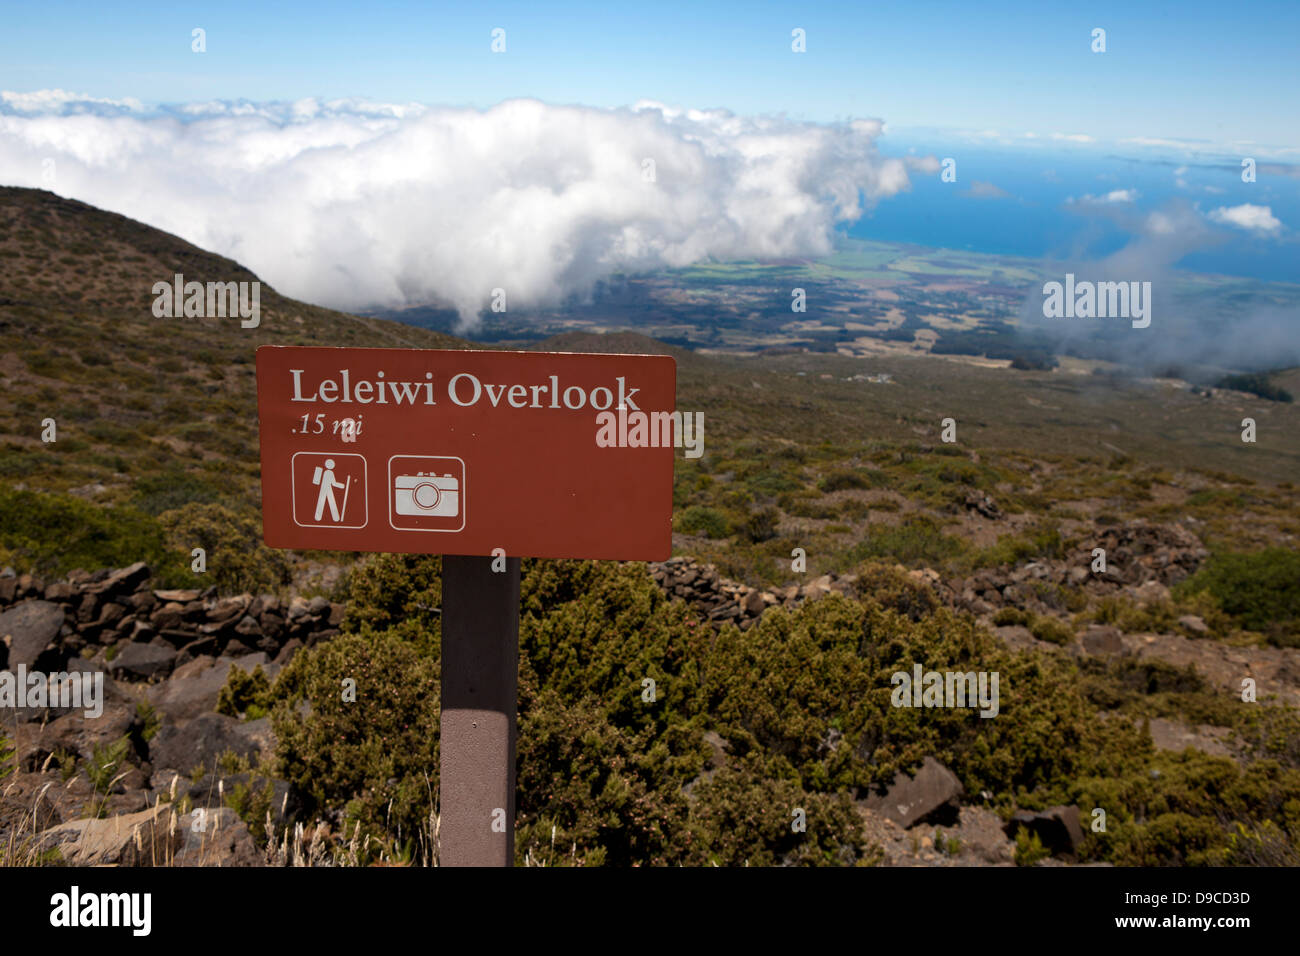 Signe signe pour Leleiwi, donnent sur le parc national de Haleakala, Maui, Hawaii, United States of America Banque D'Images